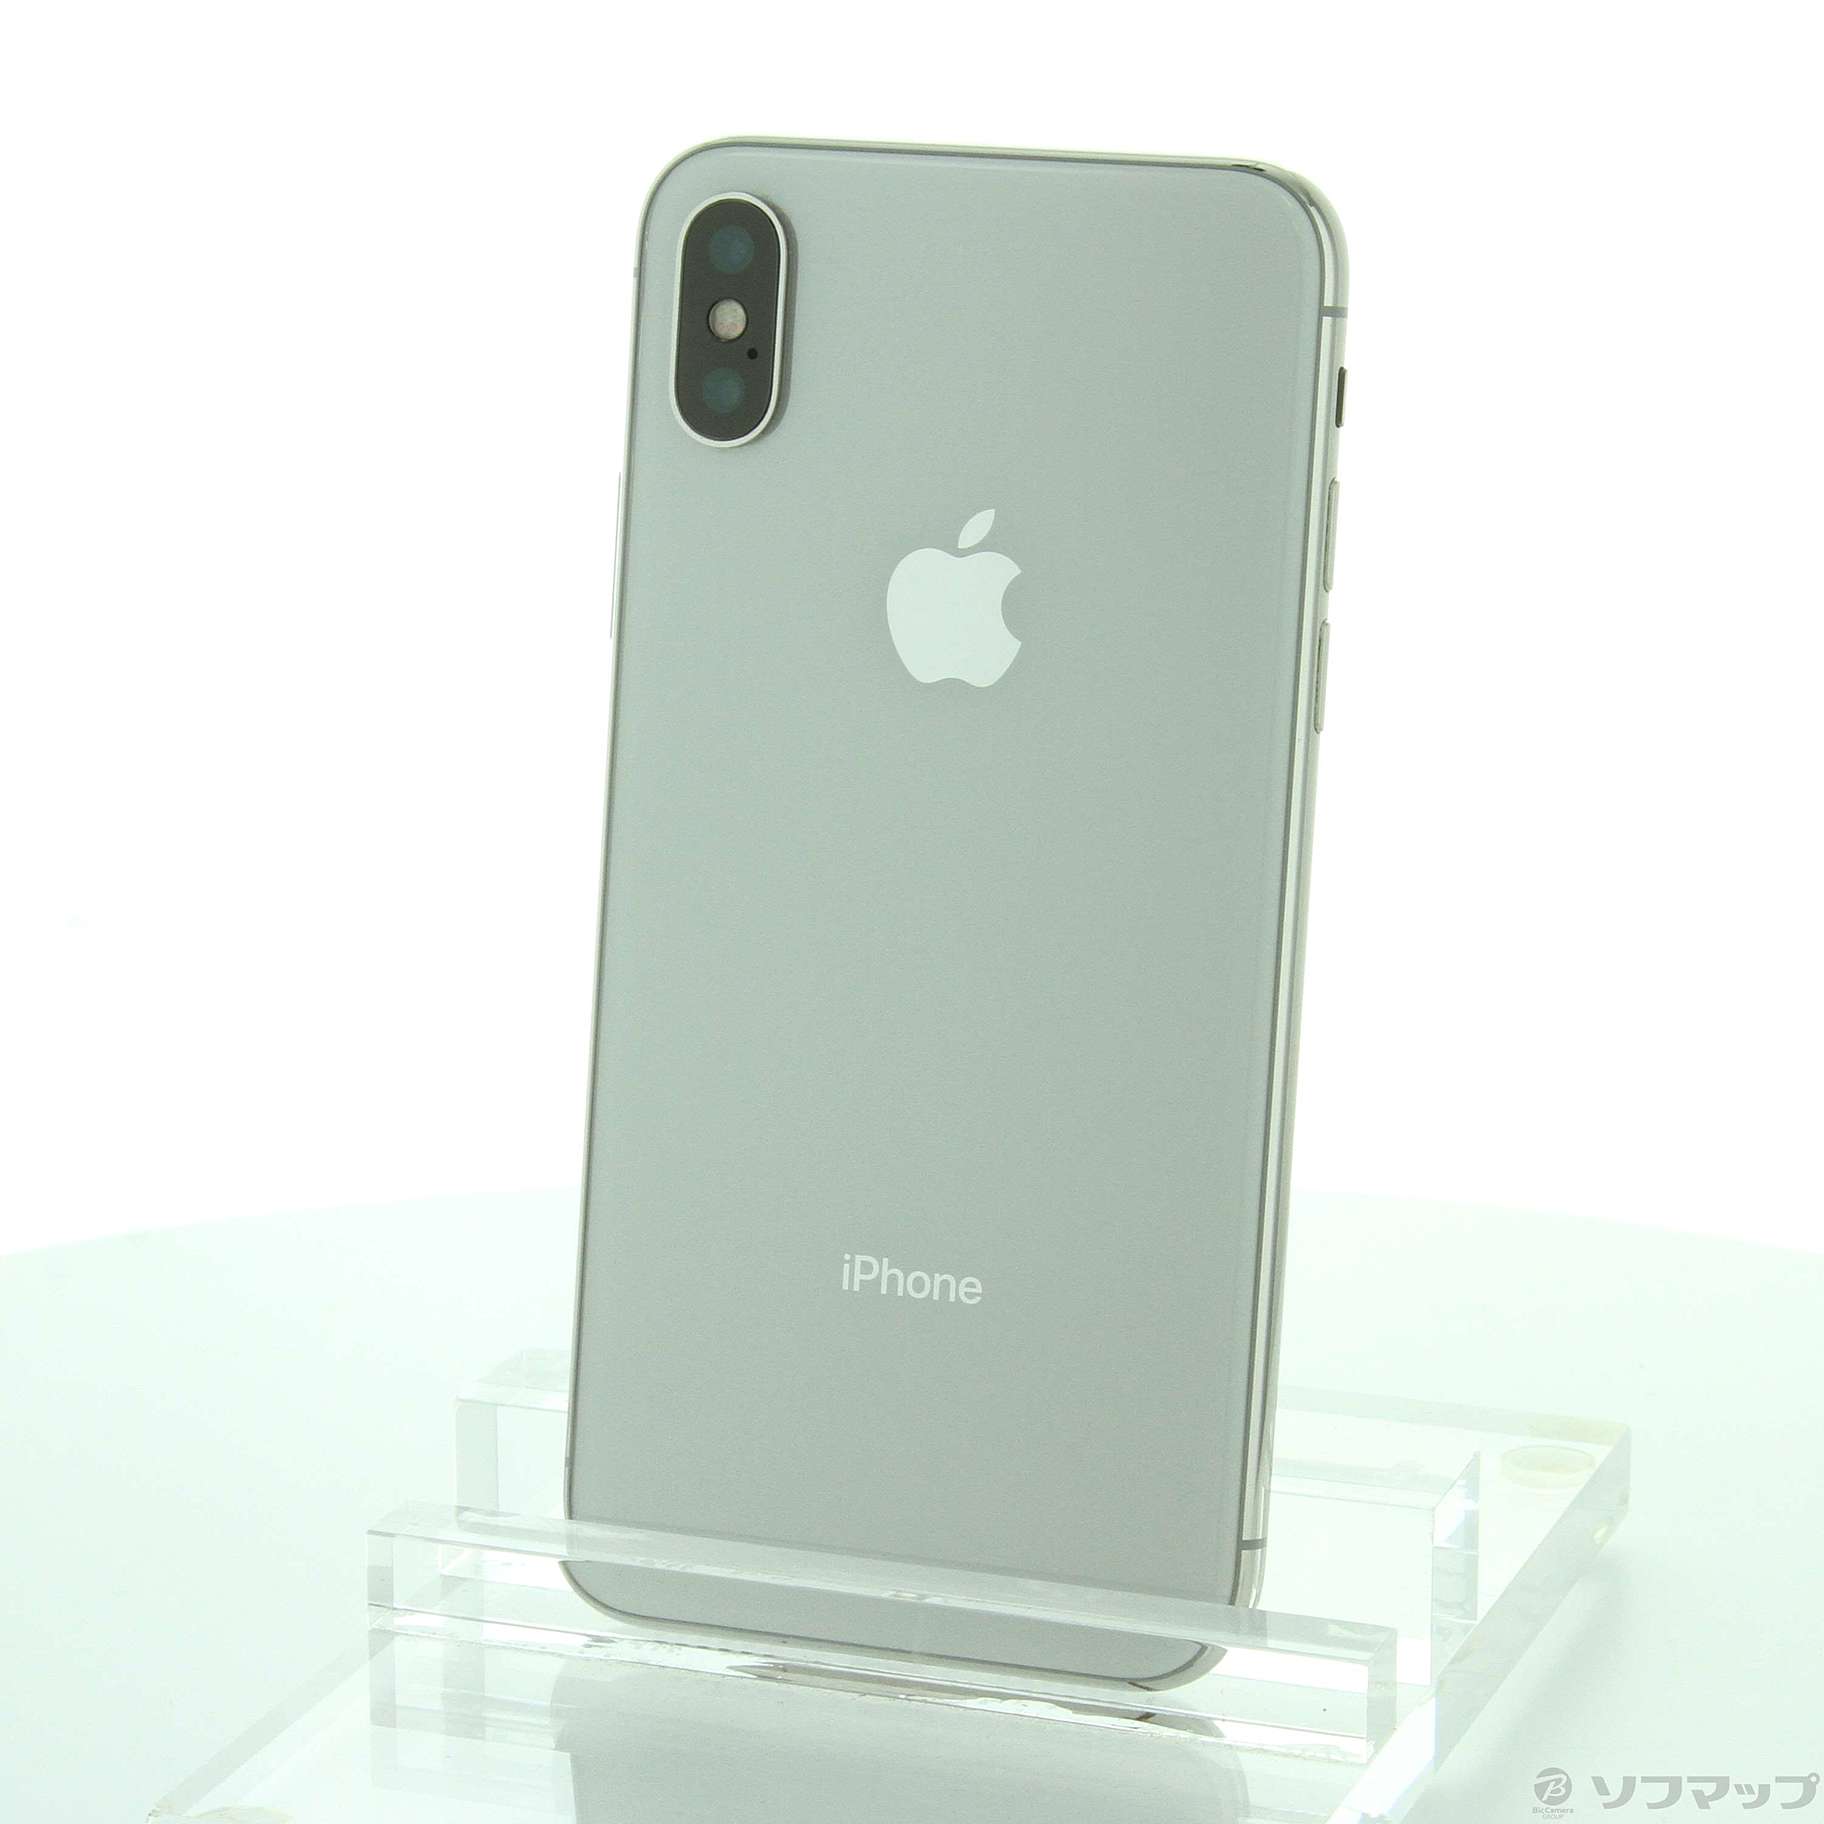 iPhone X Silver 256 GB SIMフリー-